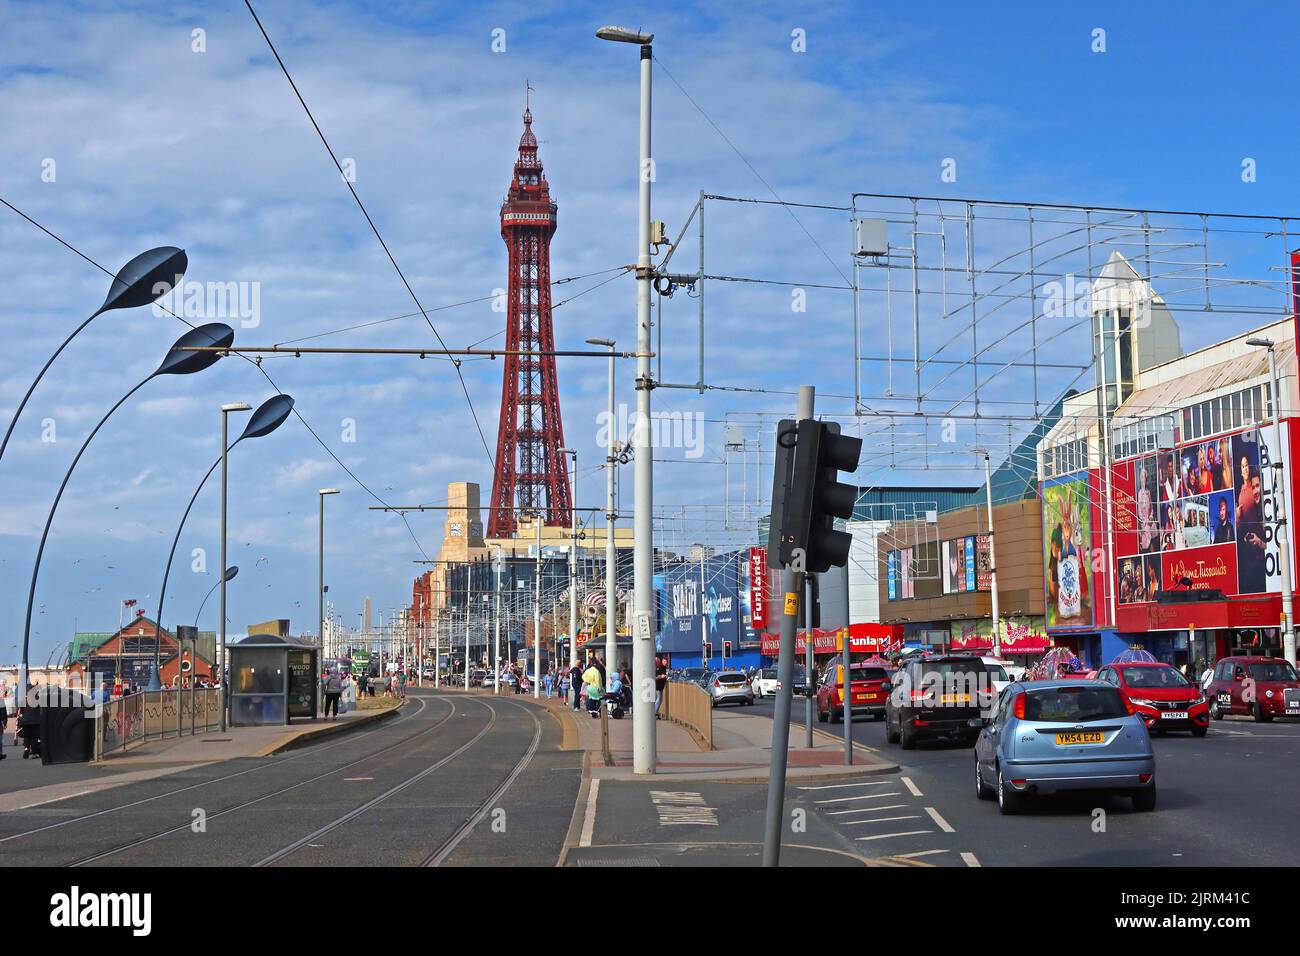 Blackpool Tower, promenade et plage, station balnéaire du Lancashire, Angleterre du Nord-Ouest, Royaume-Uni, FY1 4BJ. Banque D'Images